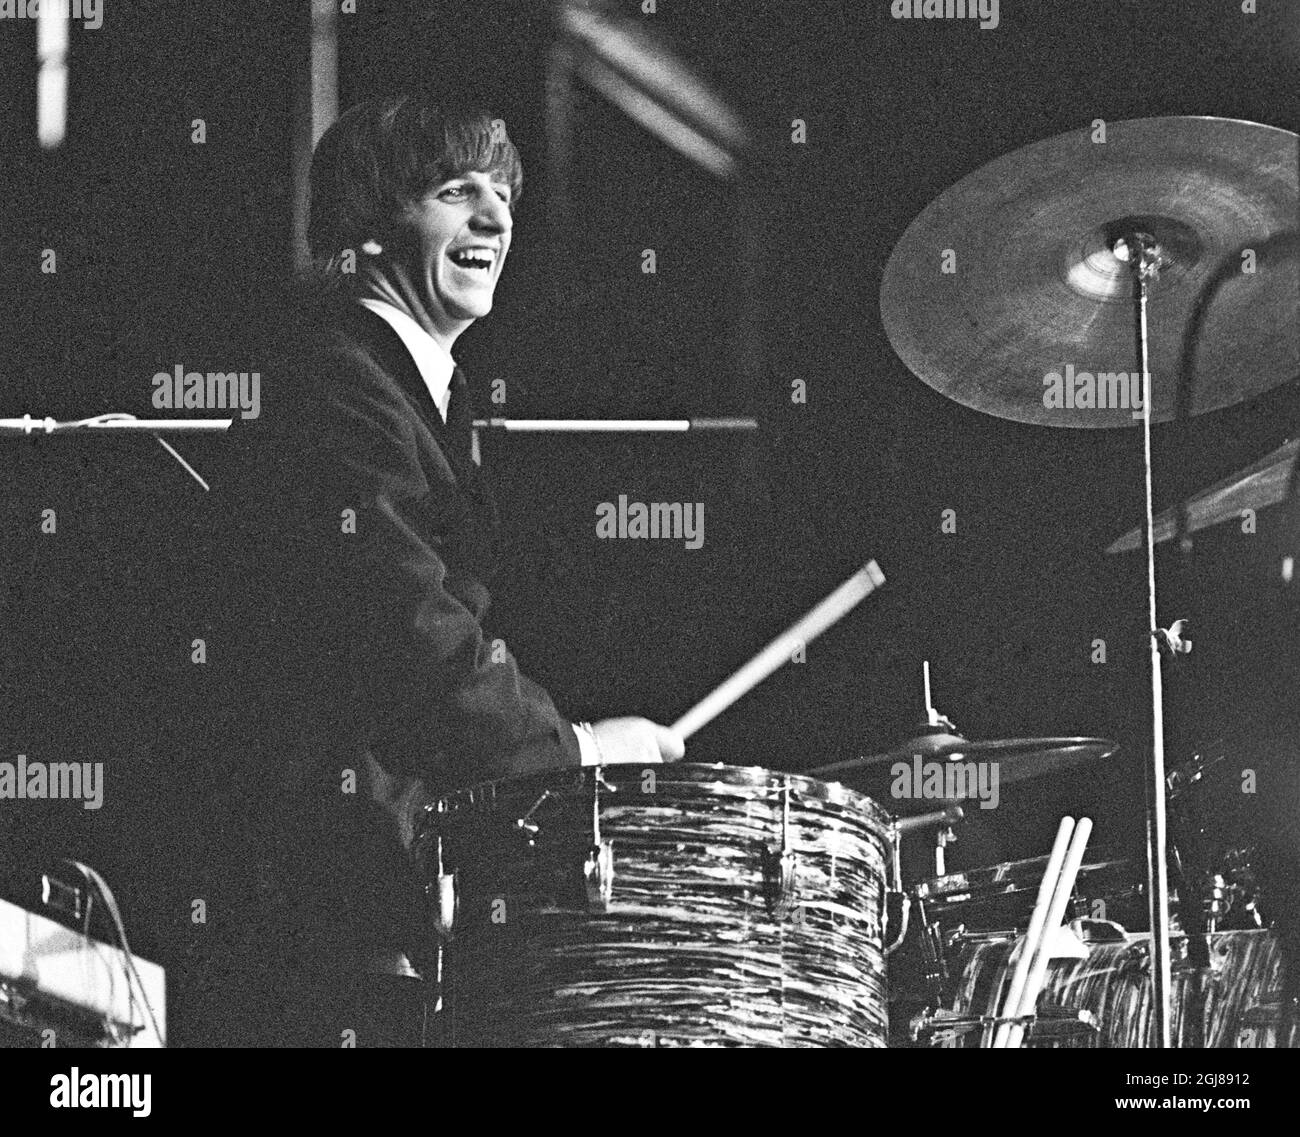 STOCKHOLM 1964-07-28 *POUR VOS DOSSIERS* Ringo Starr des Beatles sont vus pendant un concert au stade de glace de Johanneshov à Stockholm, Suède, 28 juillet 1964 Foto: Folke Hellberg / DN / TT / Kod: 23 **OUT SWEDEN OUT** Banque D'Images